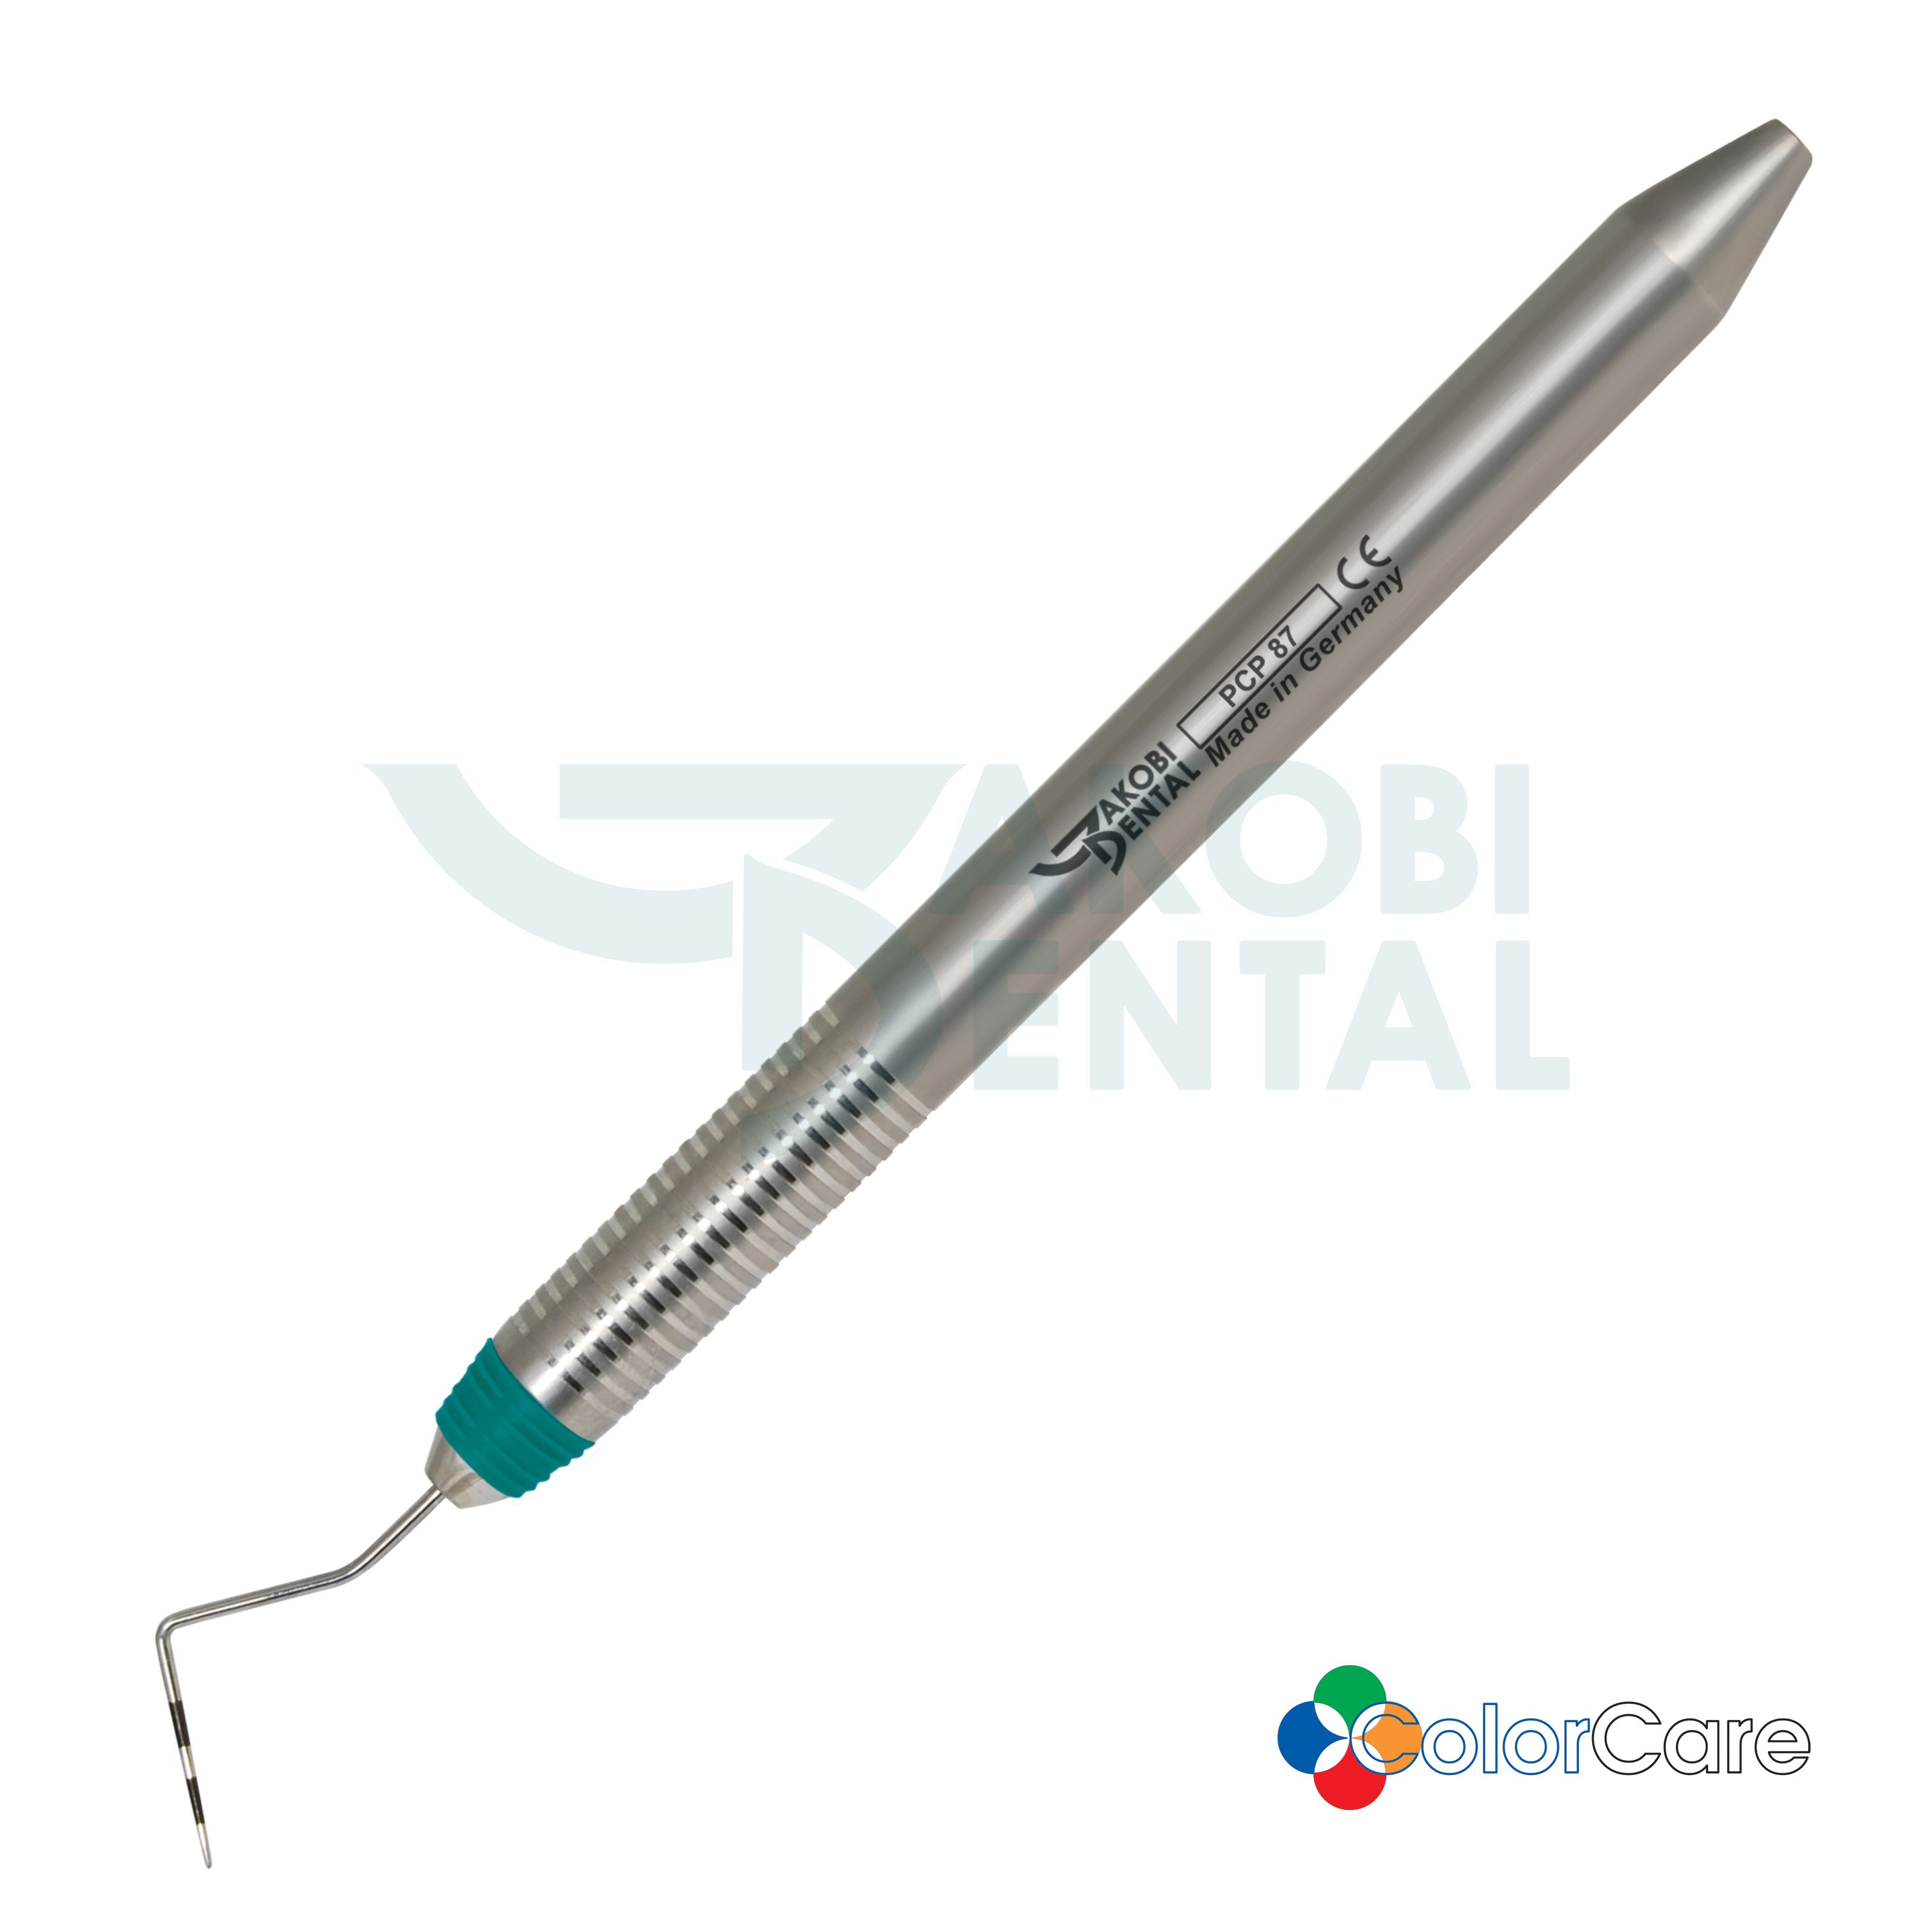 Periodontal probe PCP 8, ColorCare Handle # 7